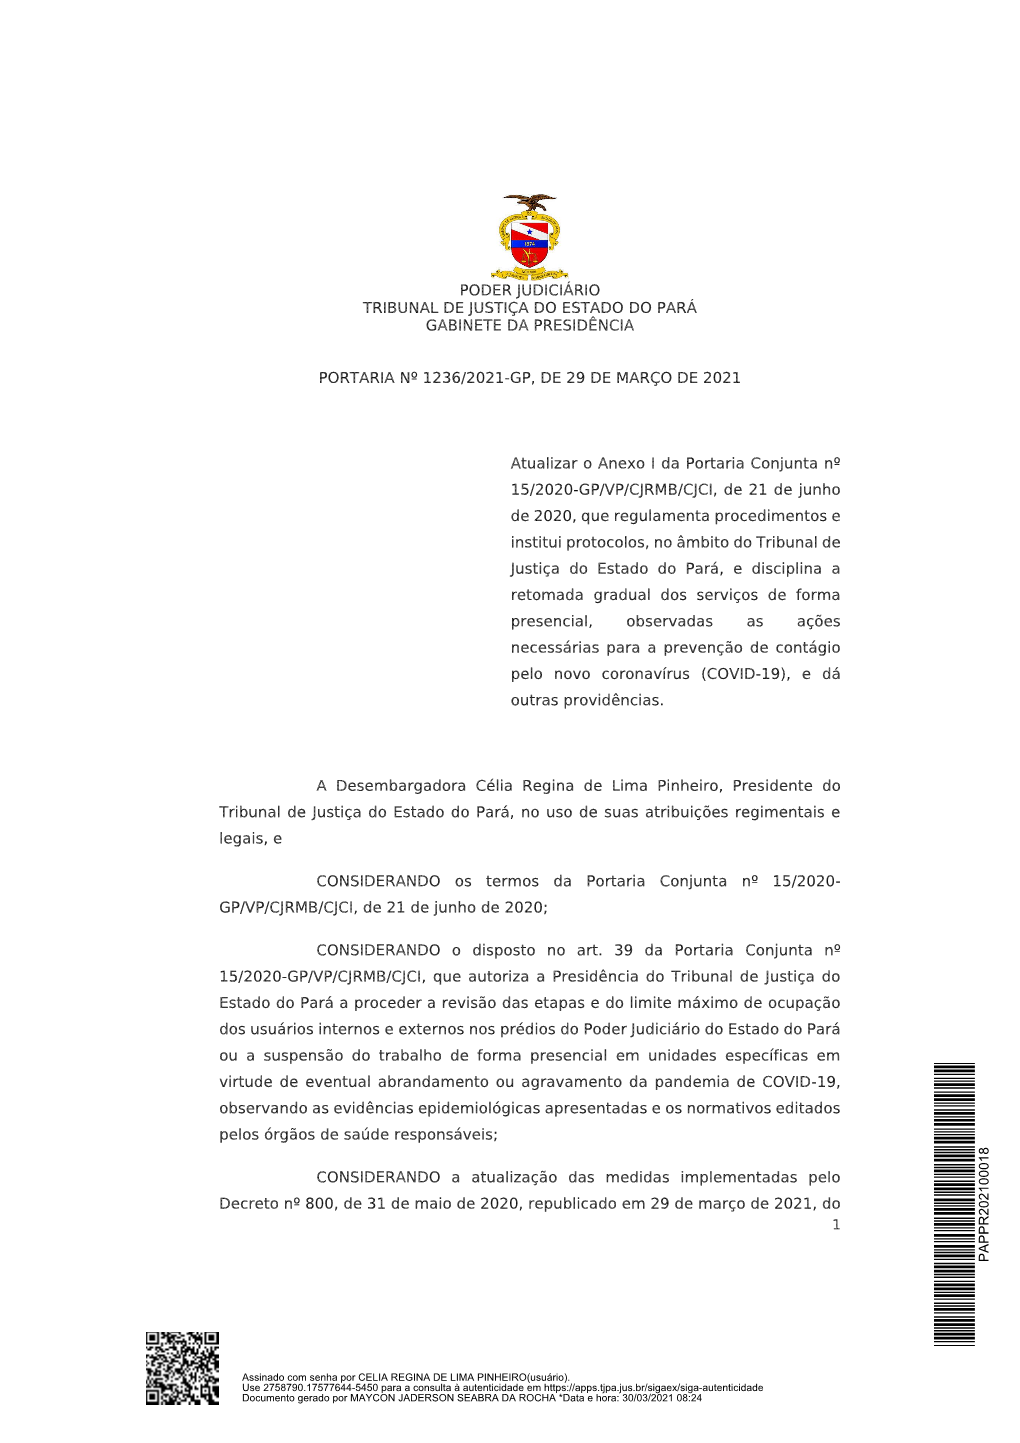 Poder Judiciário Tribunal De Justiça Do Estado Do Pará Gabinete Da Presidência Portaria Nº 1236/2021-Gp, De 29 De Março De